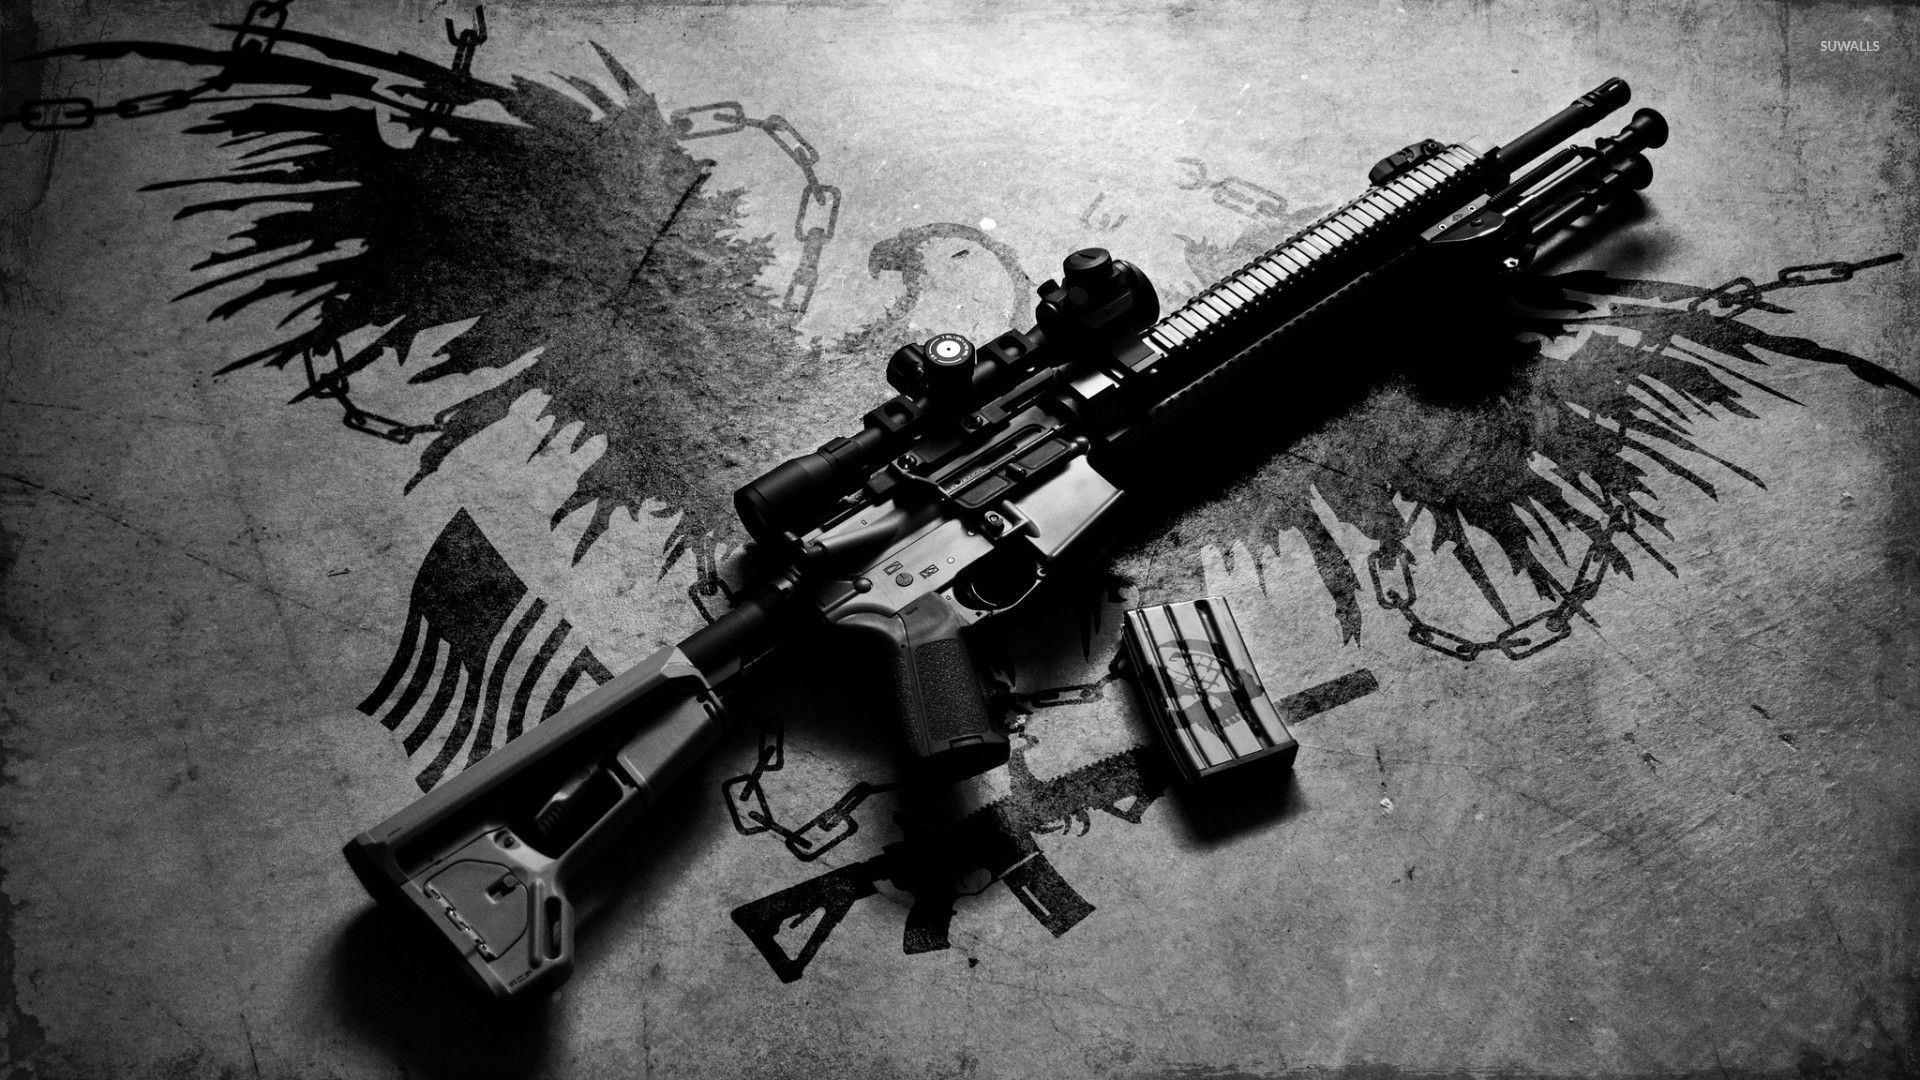 hd wallpaper for mobile 1920x1080 download,gun,firearm,assault rifle,rifle,trigger